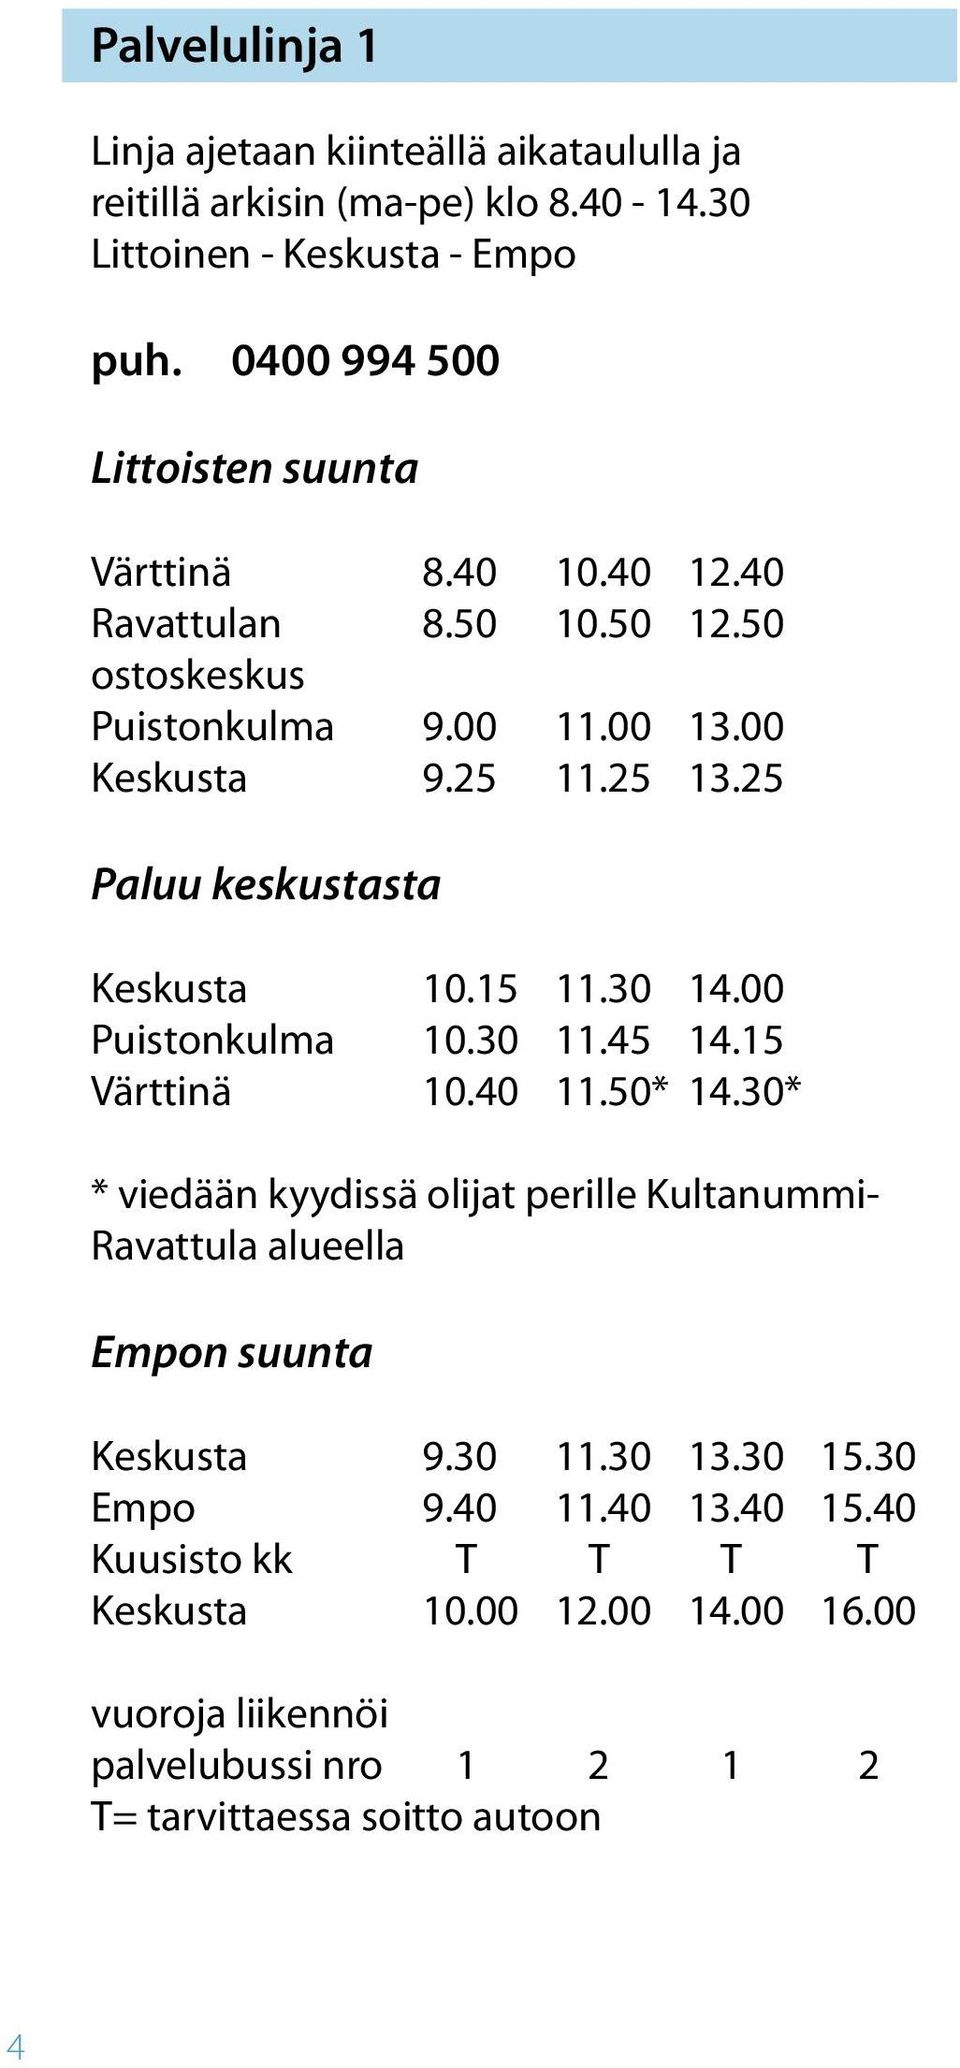 25 Paluu keskustasta Keskusta 10.15 11.30 14.00 Puistonkulma 10.30 11.45 14.15 Värttinä 10.40 11.50* 14.